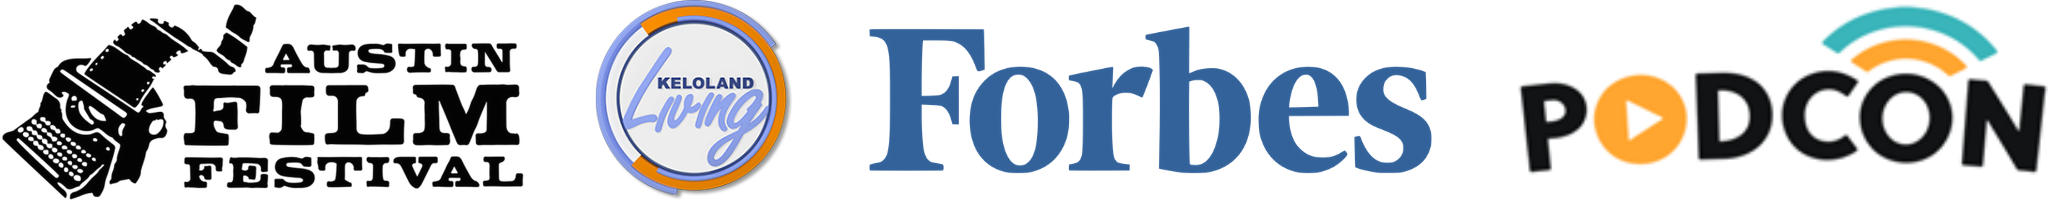 Logos for Austin Film Festival, Keloland Living, Forbes, Podcon,